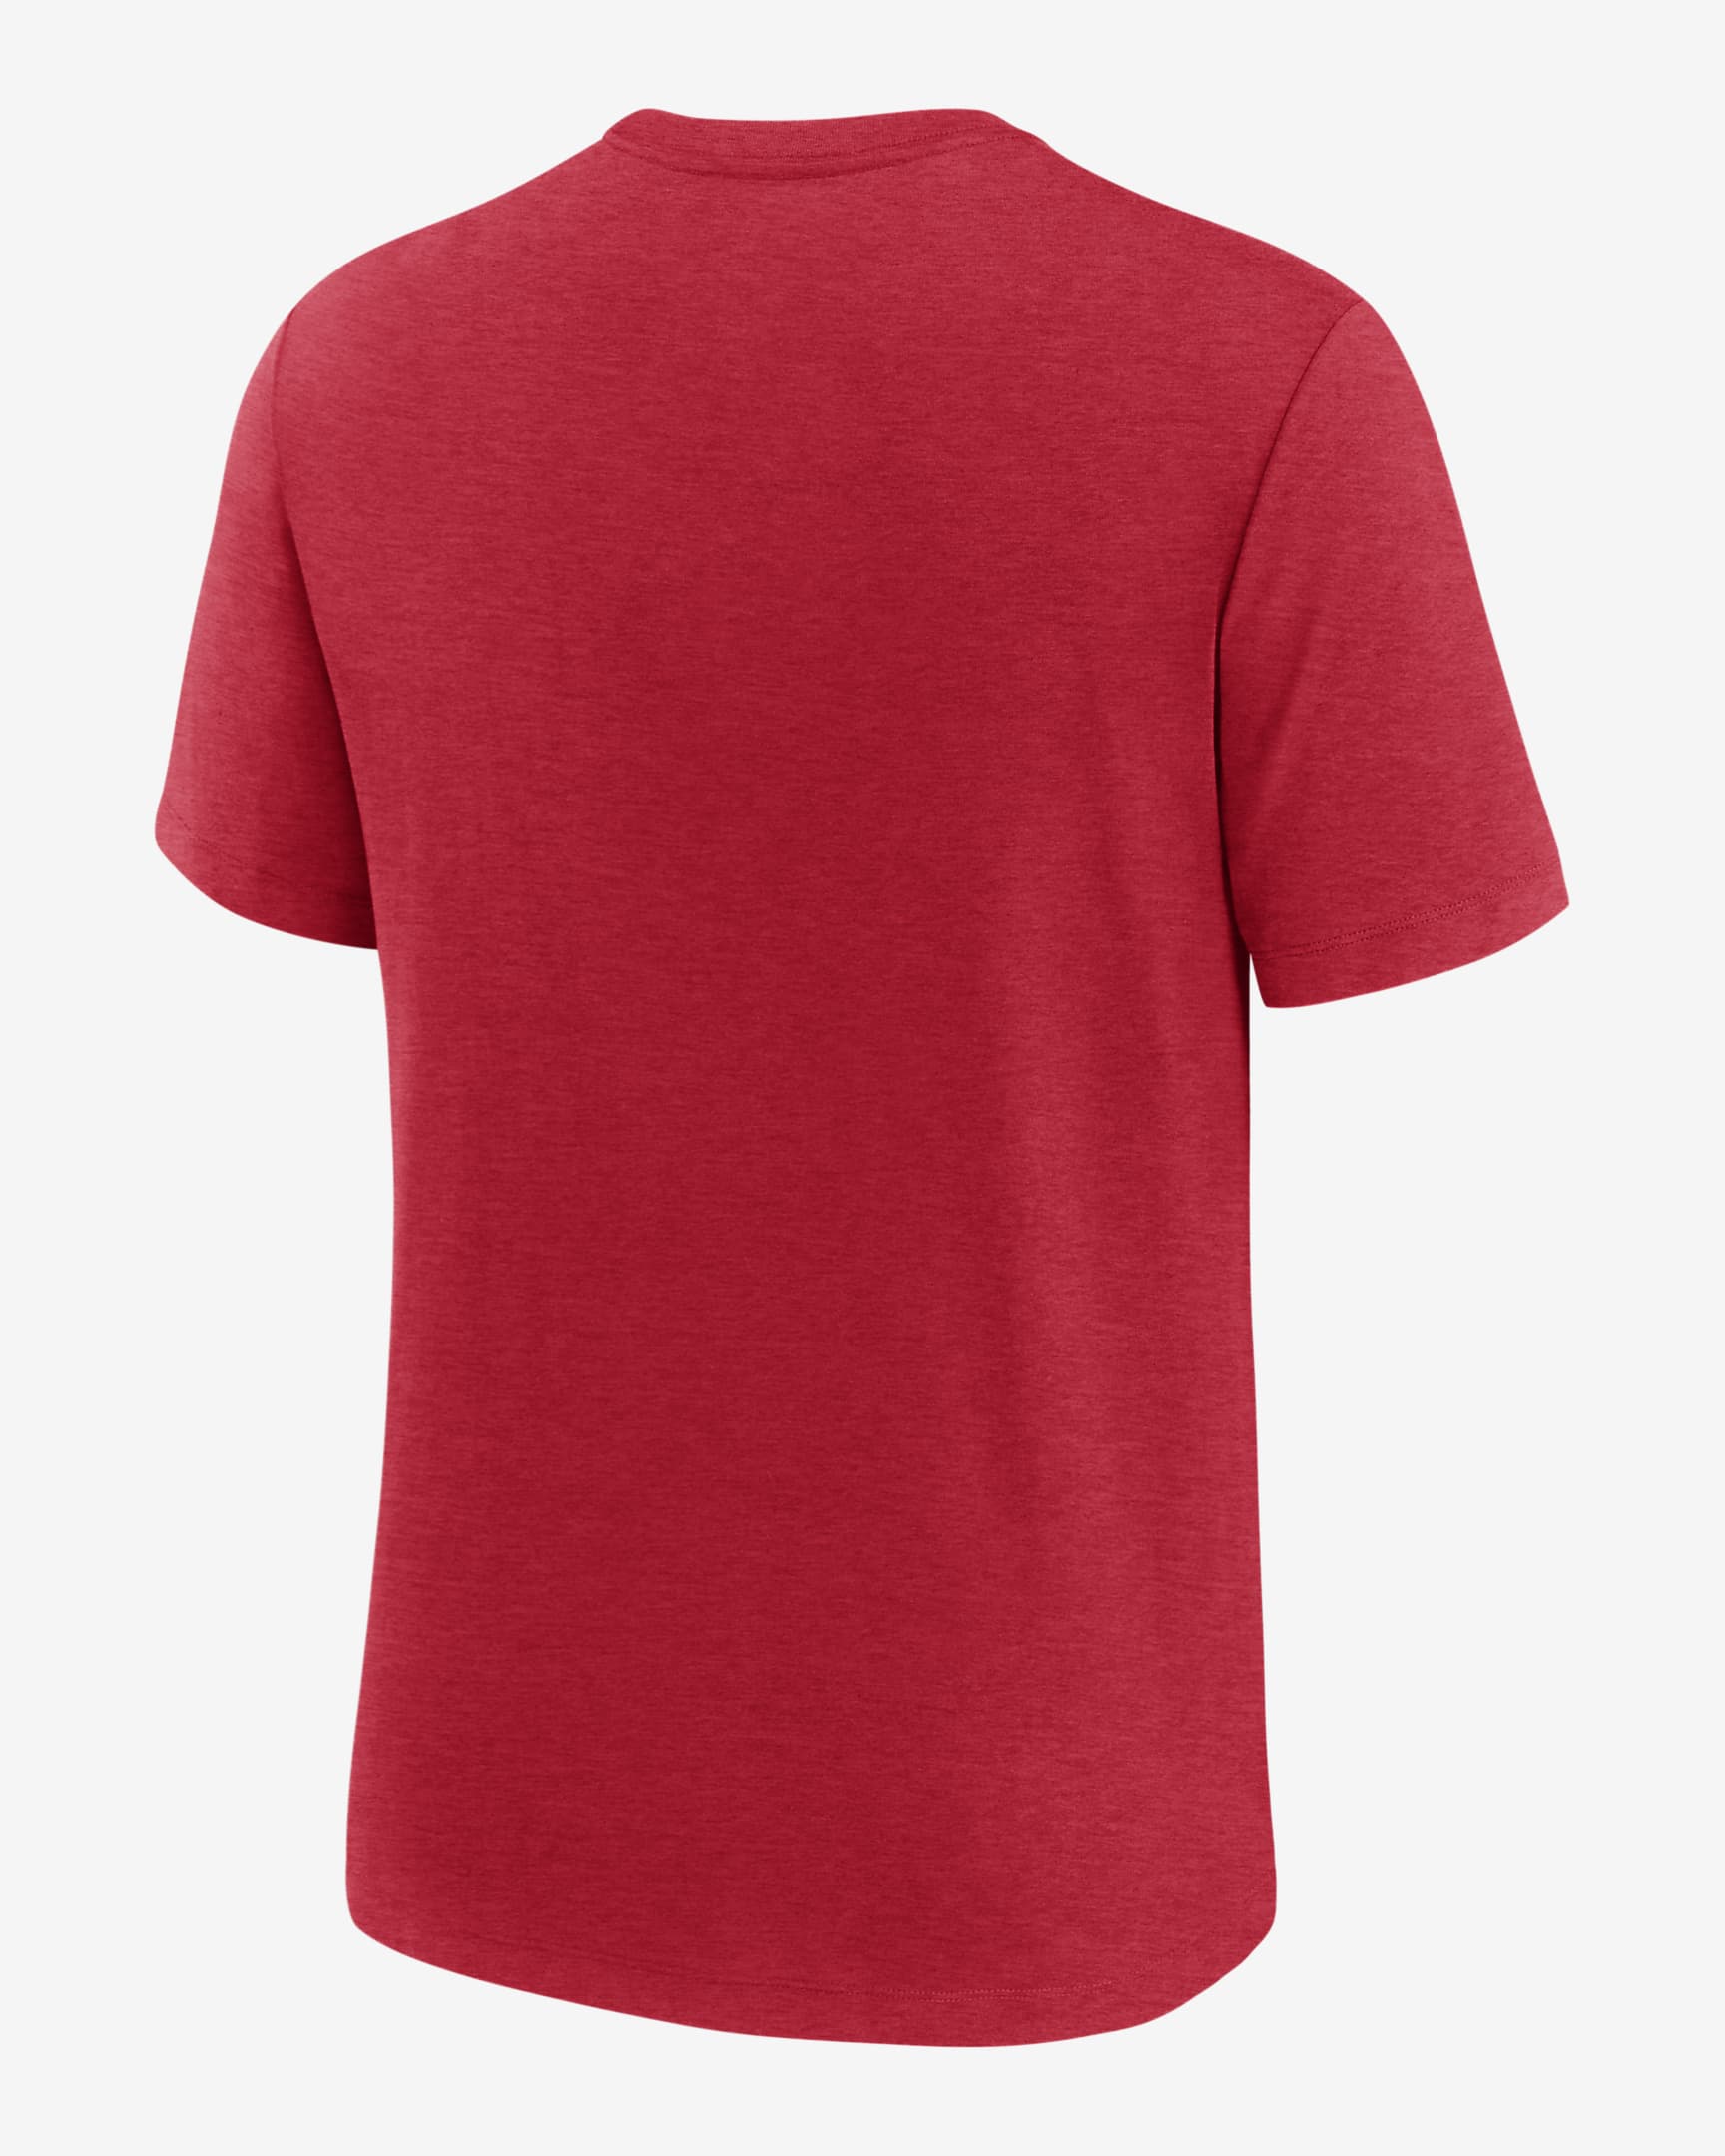 San Francisco 49ers Blitz Men's Nike NFL T-Shirt. Nike.com